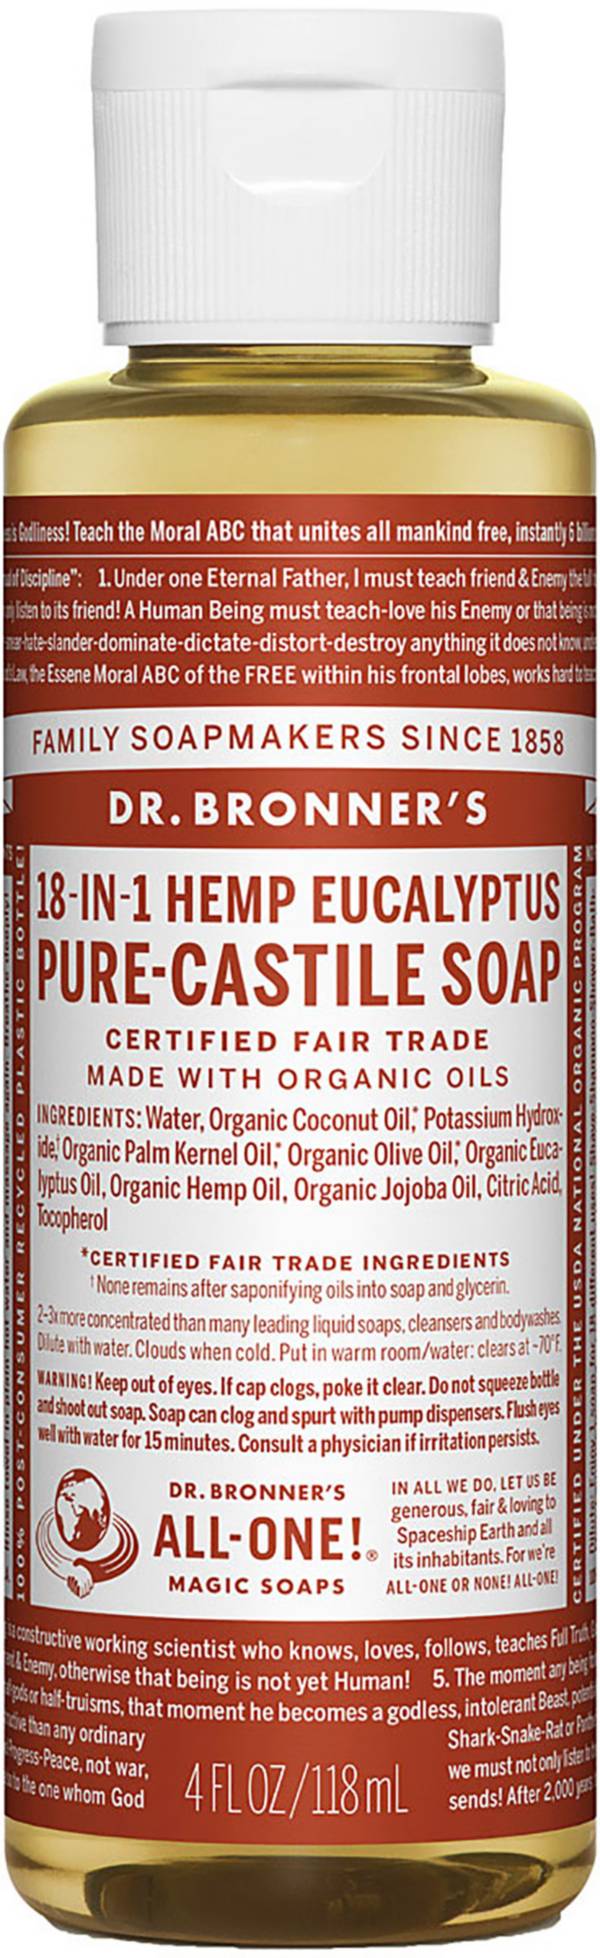 Dr. Bronner's Eucalyptus 4 oz Pure-Castile Soap product image